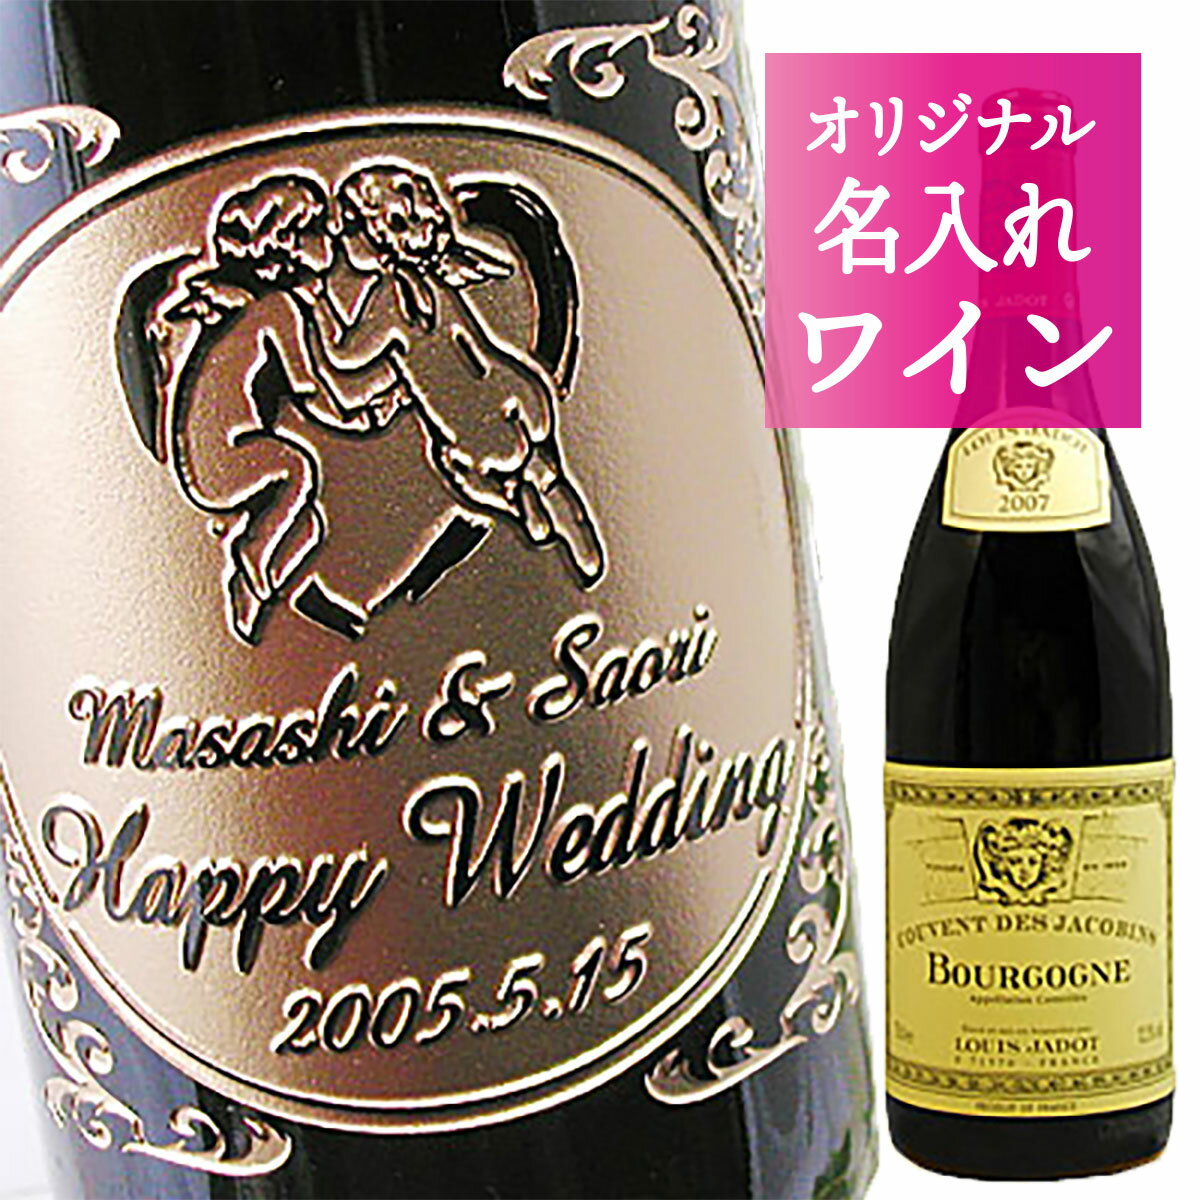 ルイ・ジャド ブルゴーニュ ルージュ“クーヴァン・デ・ジャコバン”（赤）【名入れ彫刻ボトル】【楽ギフ_名入れ】フランス・ブルゴーニュ地方の中でも最高の造り手として世界的に有名な「ルイ・ジャド」の赤ワイン。結婚祝い・結婚記念日・誕生祝い・出産祝い・成人祝いなどあらゆるお祝いに！